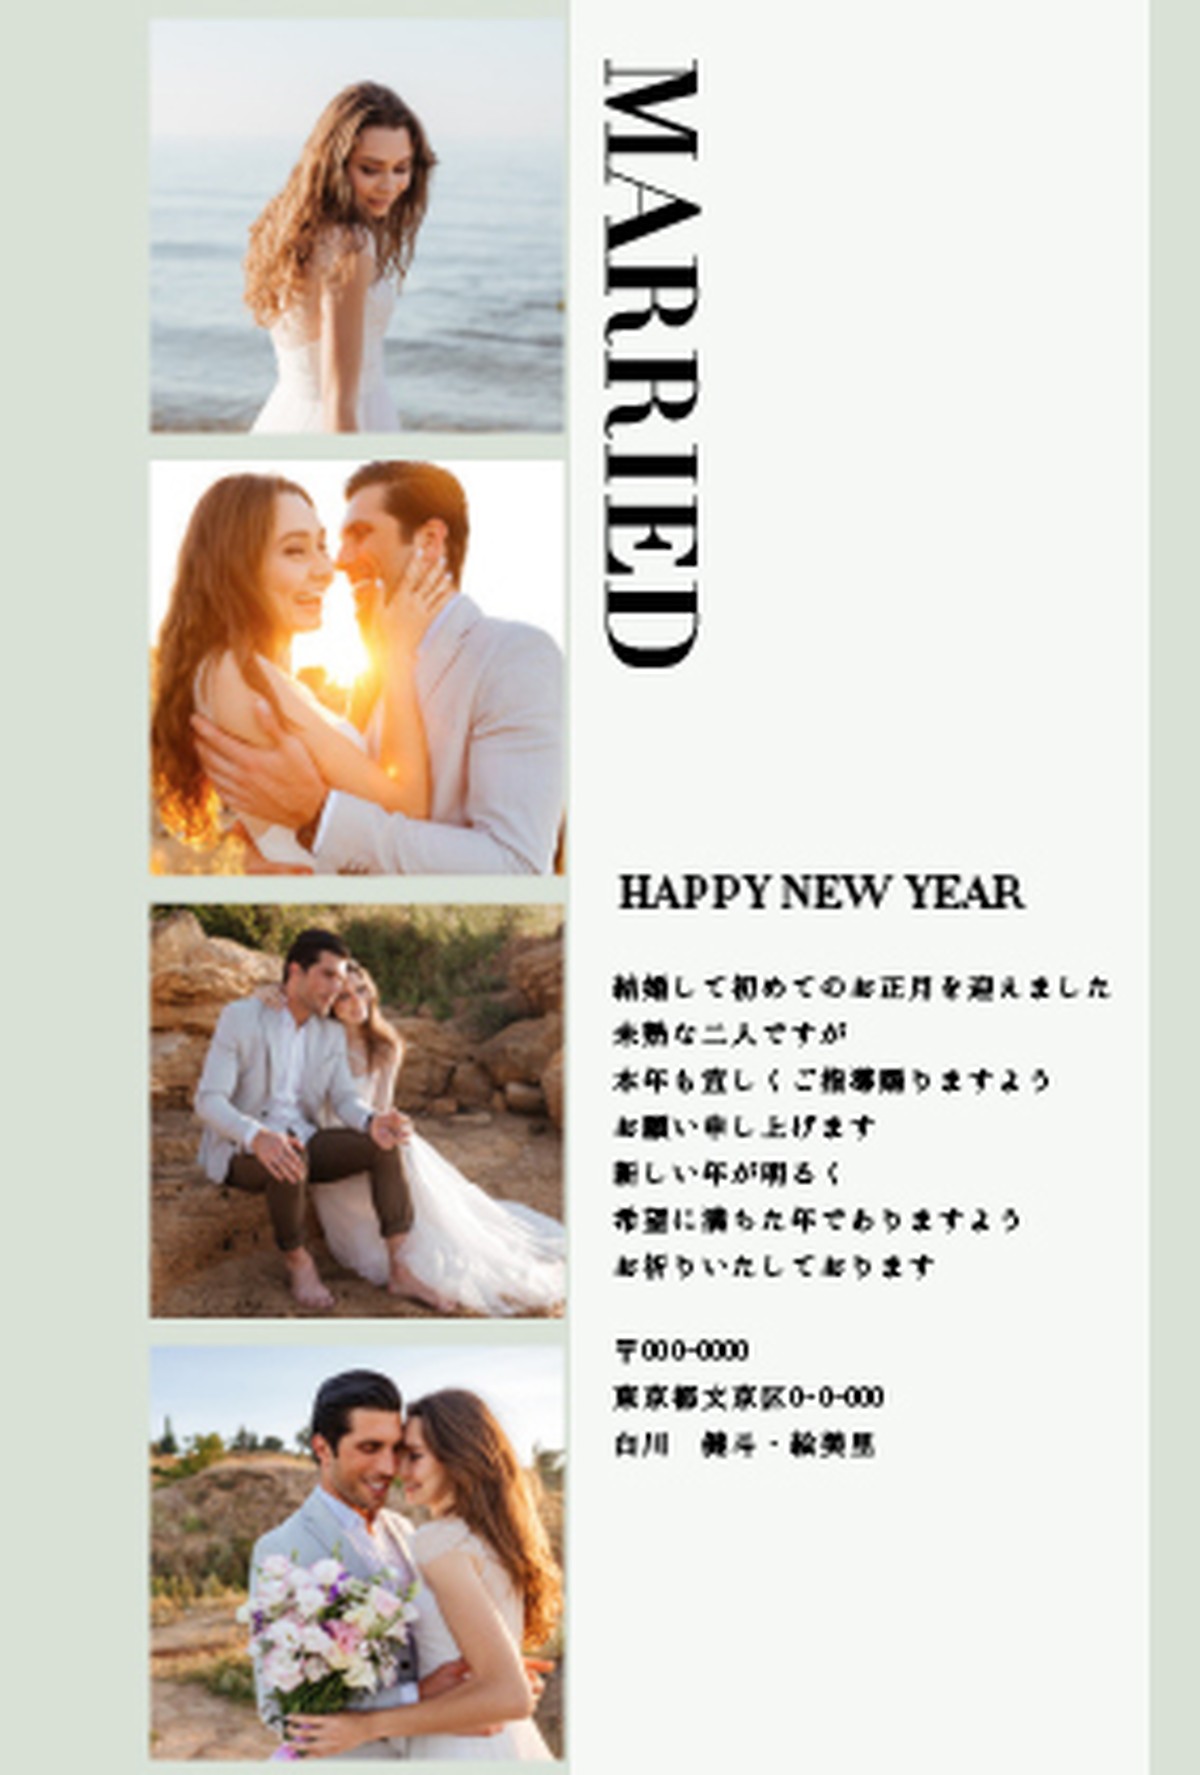 年賀状 結婚報告 21 Type D 縦 データ納品 ご自身で印刷 Edeldesign